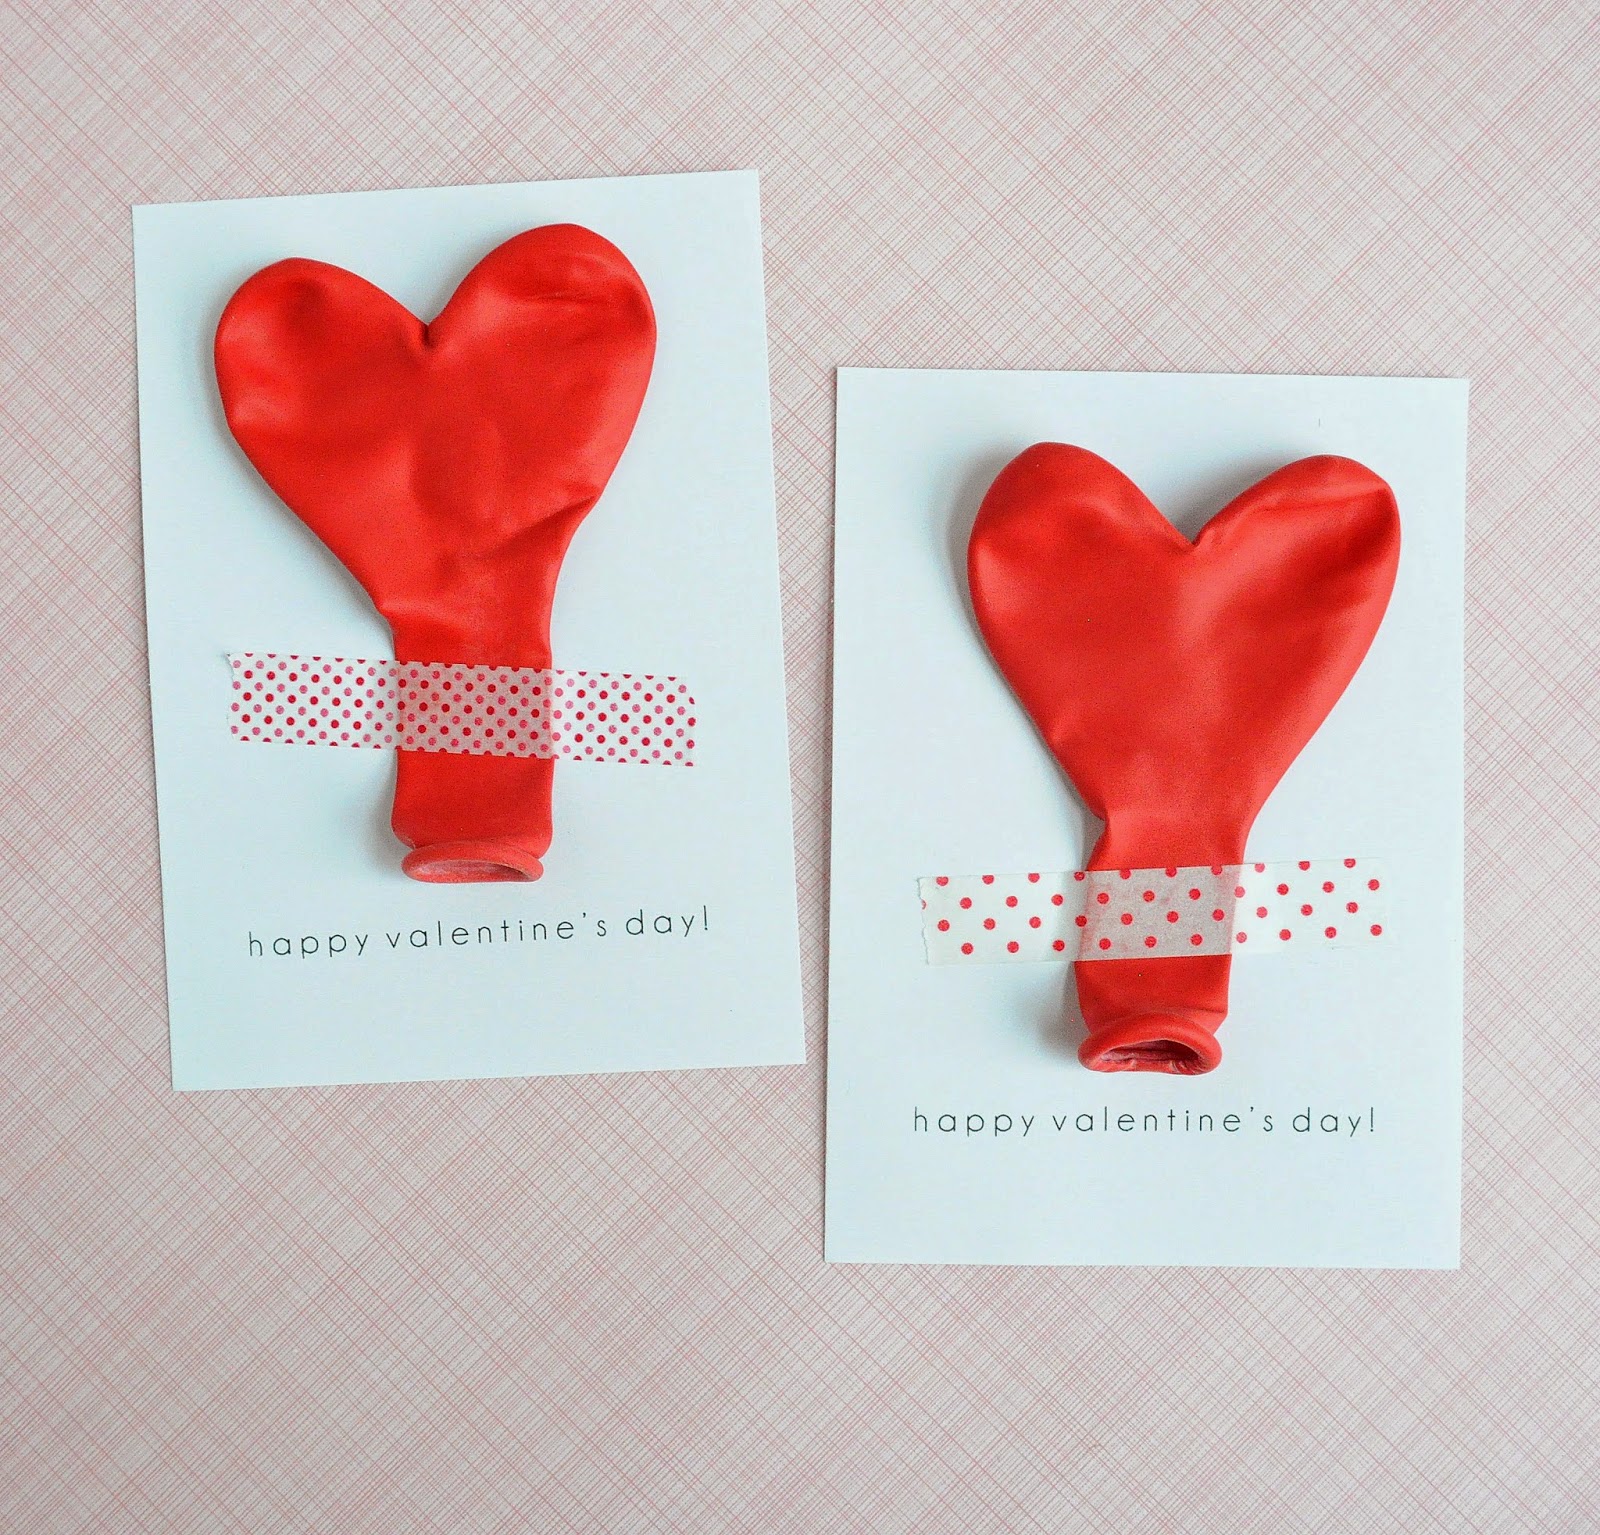 bonitas ideas sobre como hacer manualidades con globos coloridos, postales para san valentin super originales en fotos